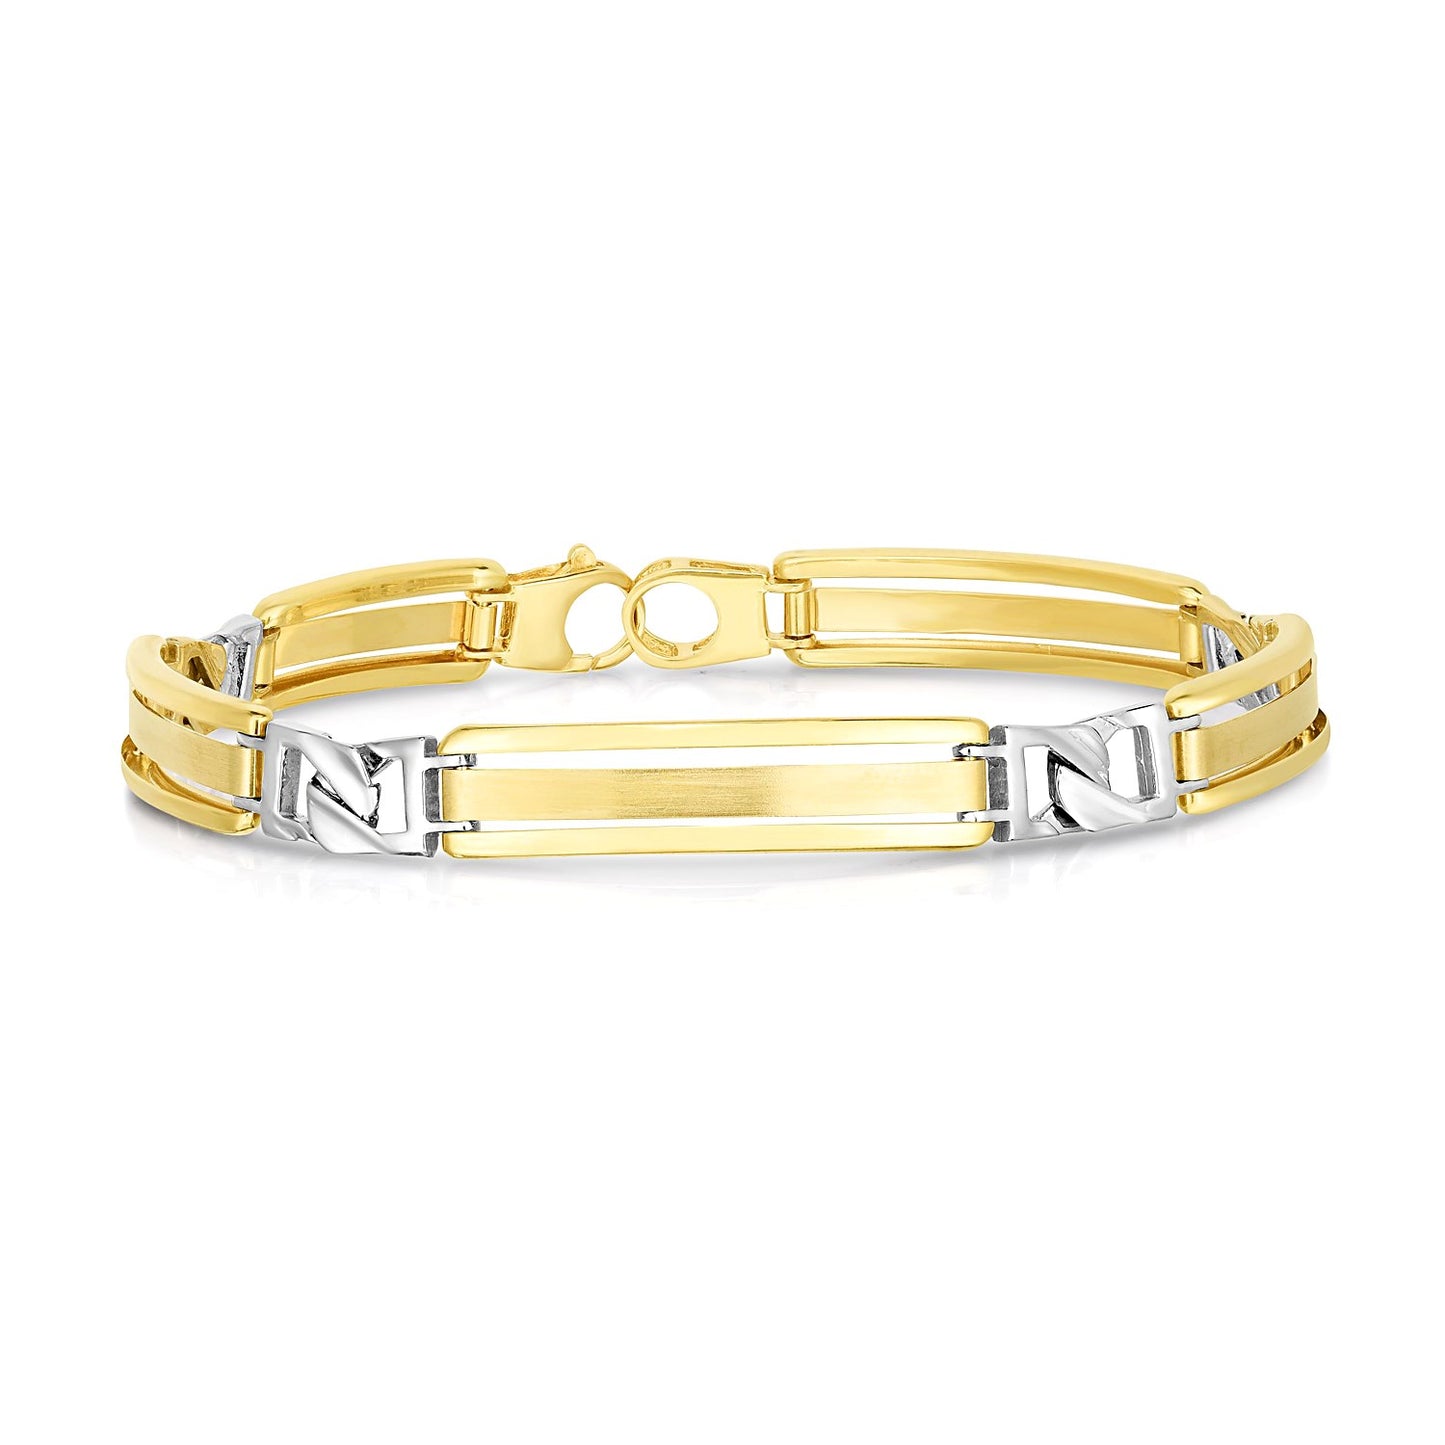 14k Two-Tone Gold Men's Bracelet with Fancy Bar Links